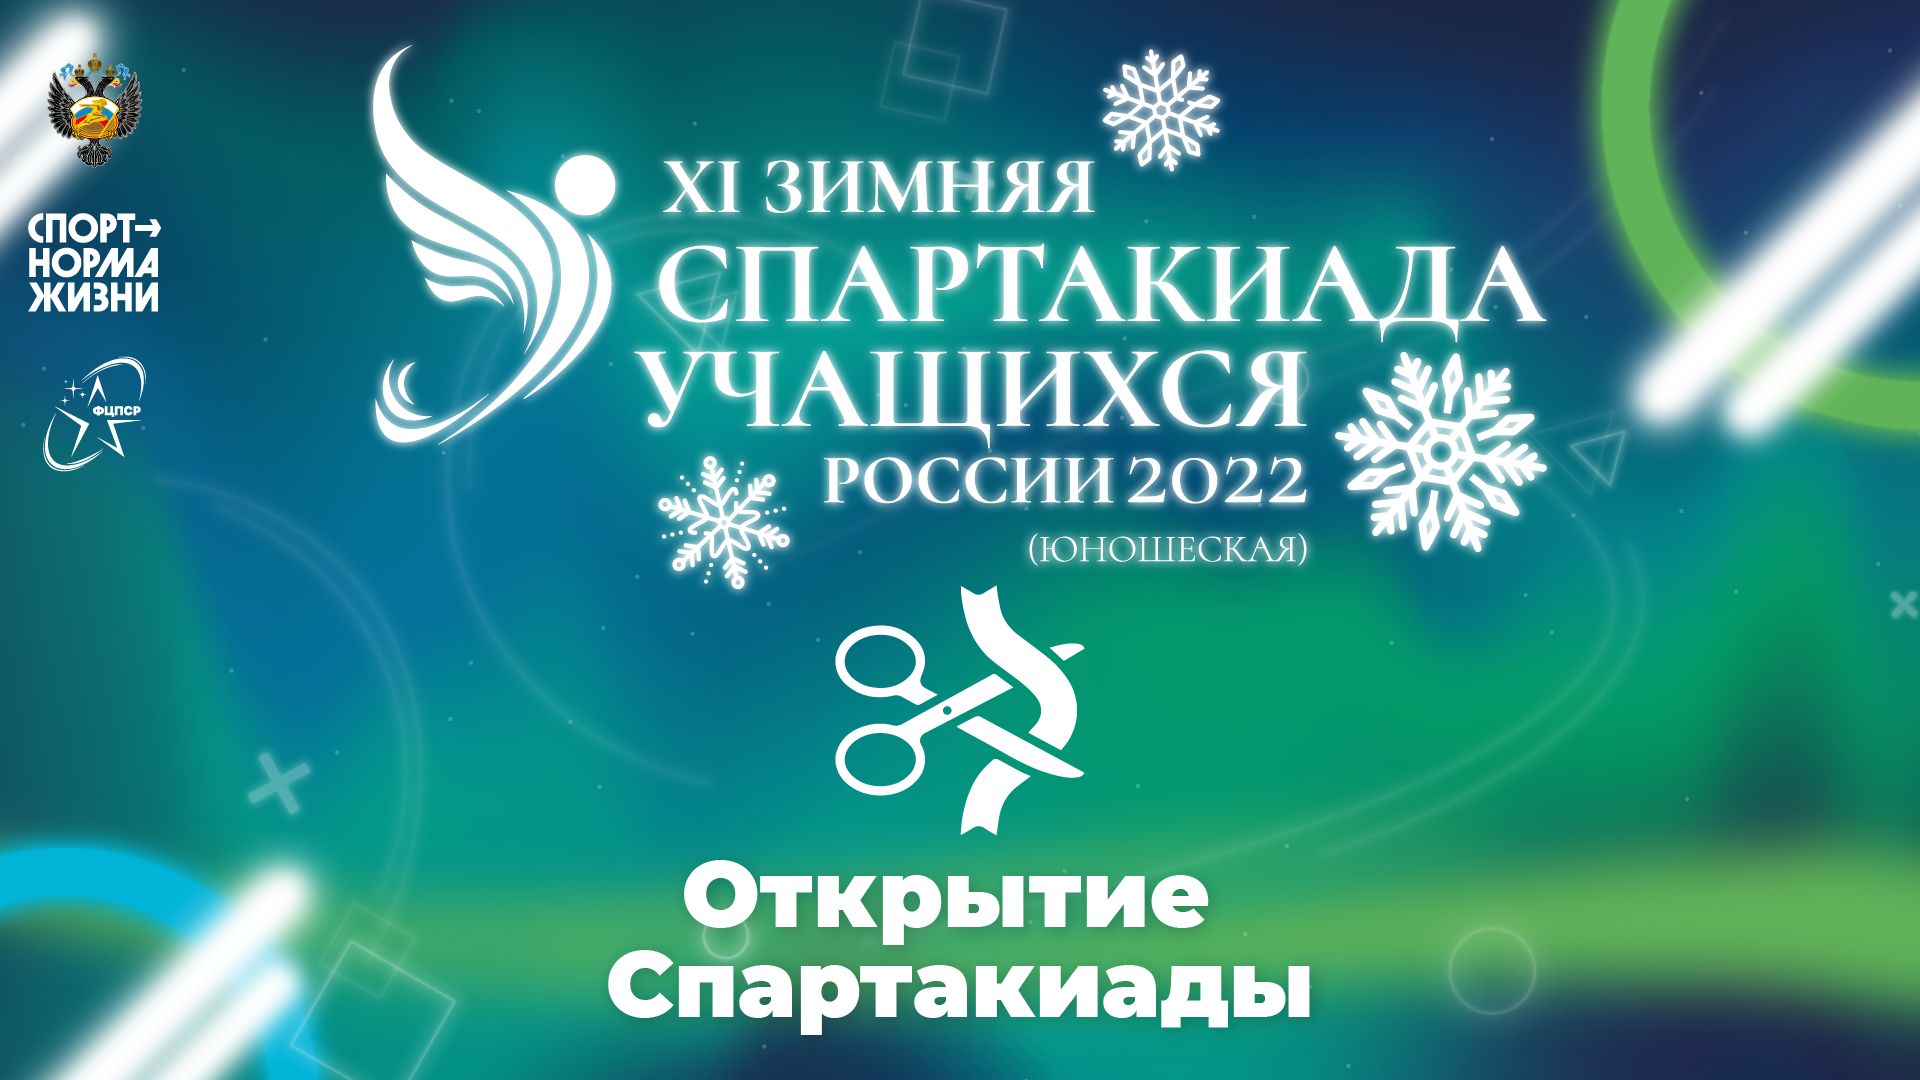 XI зимняя Спартакиада учащихся России 2022 года. Церемония открытия